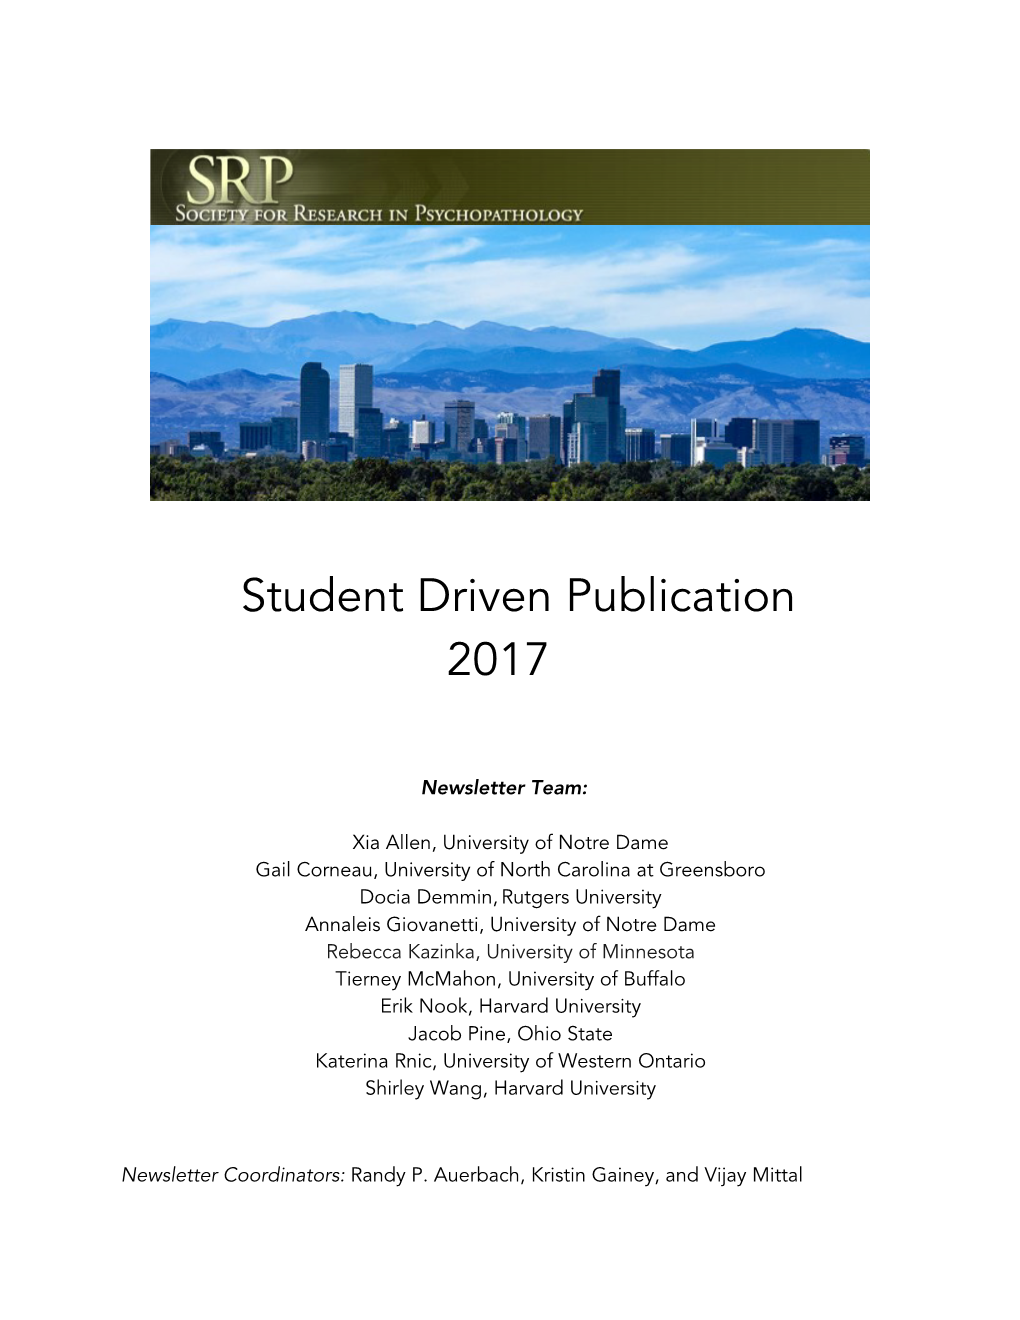 Student Driven Publication 2017